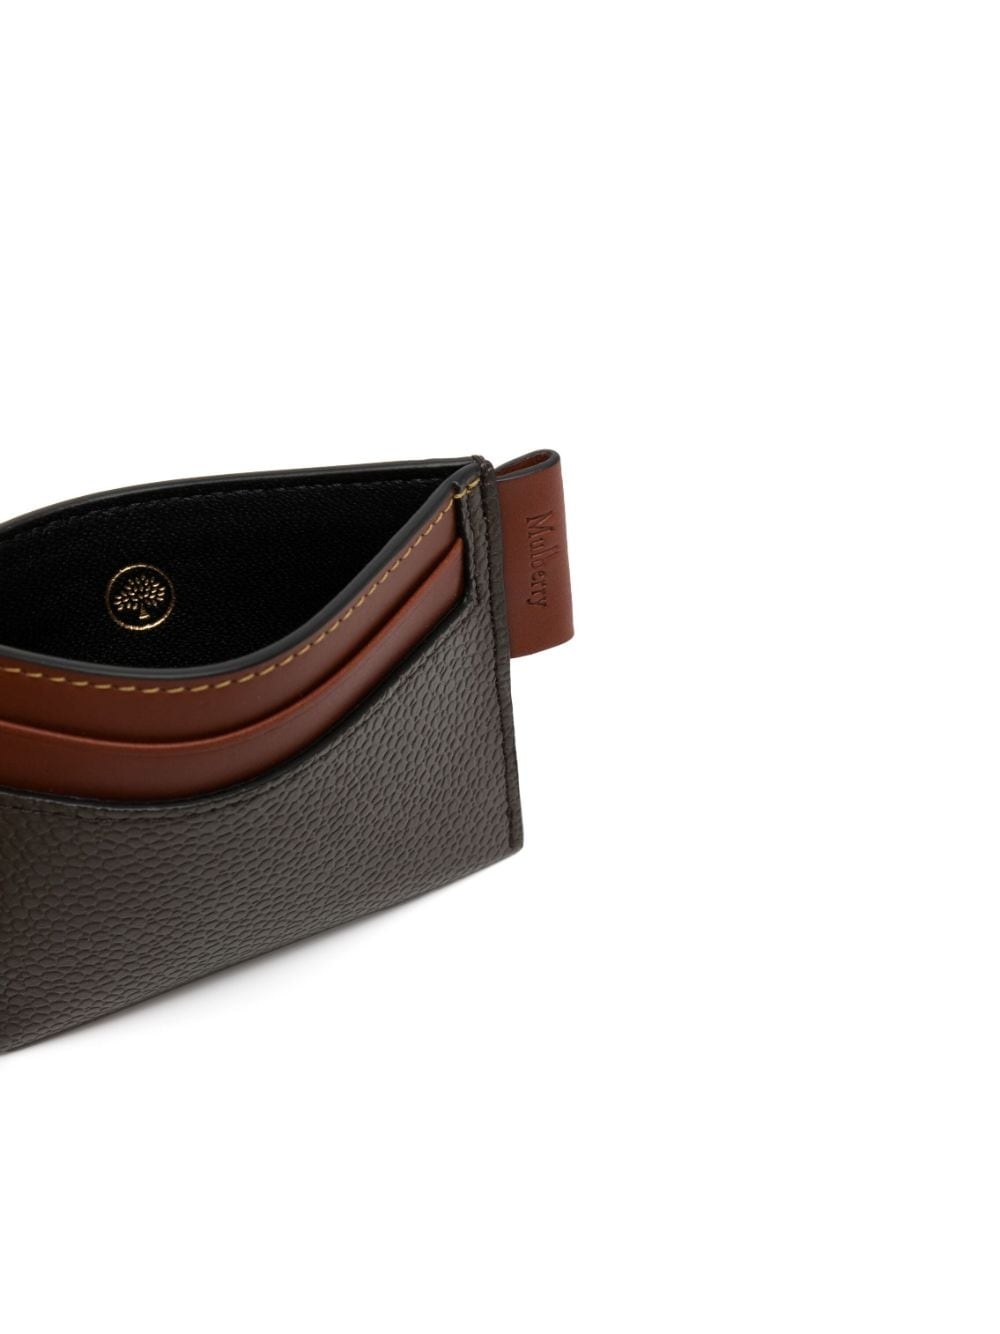 logo-tag leather cardholder - 3